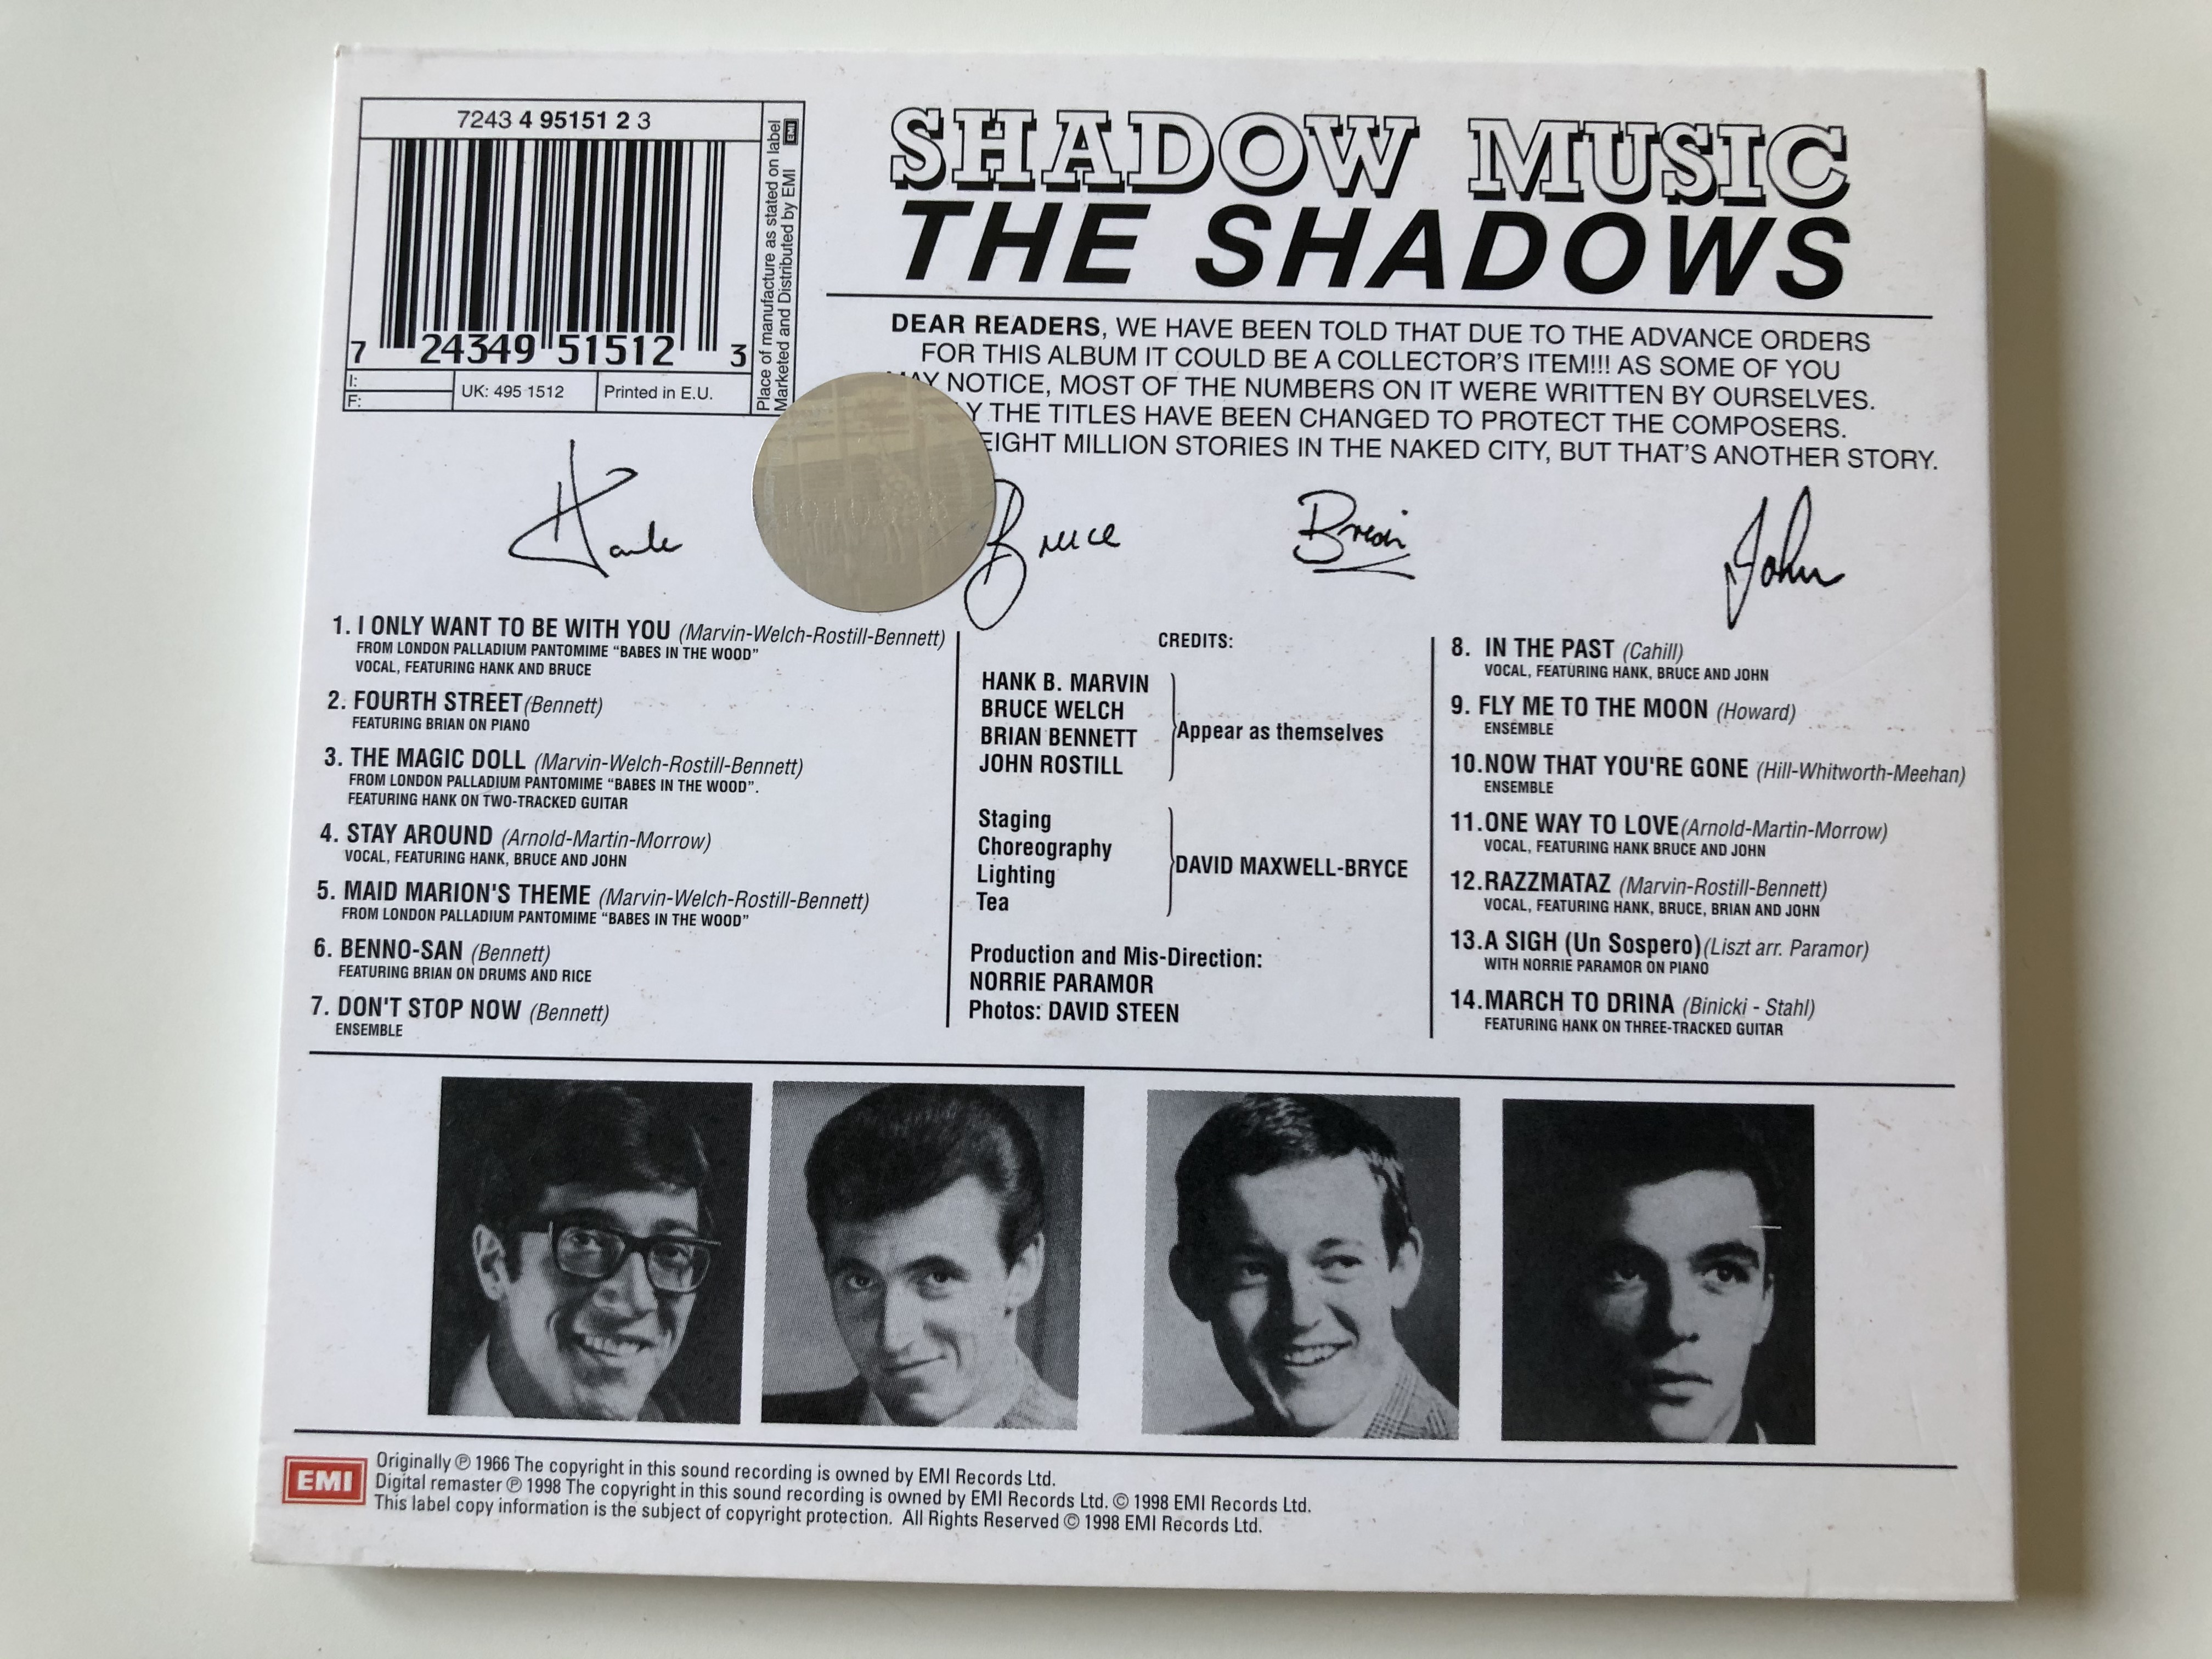 the-shadows-shadow-music-emi-audio-cd-mono-stereo-724349515123-4-.jpg